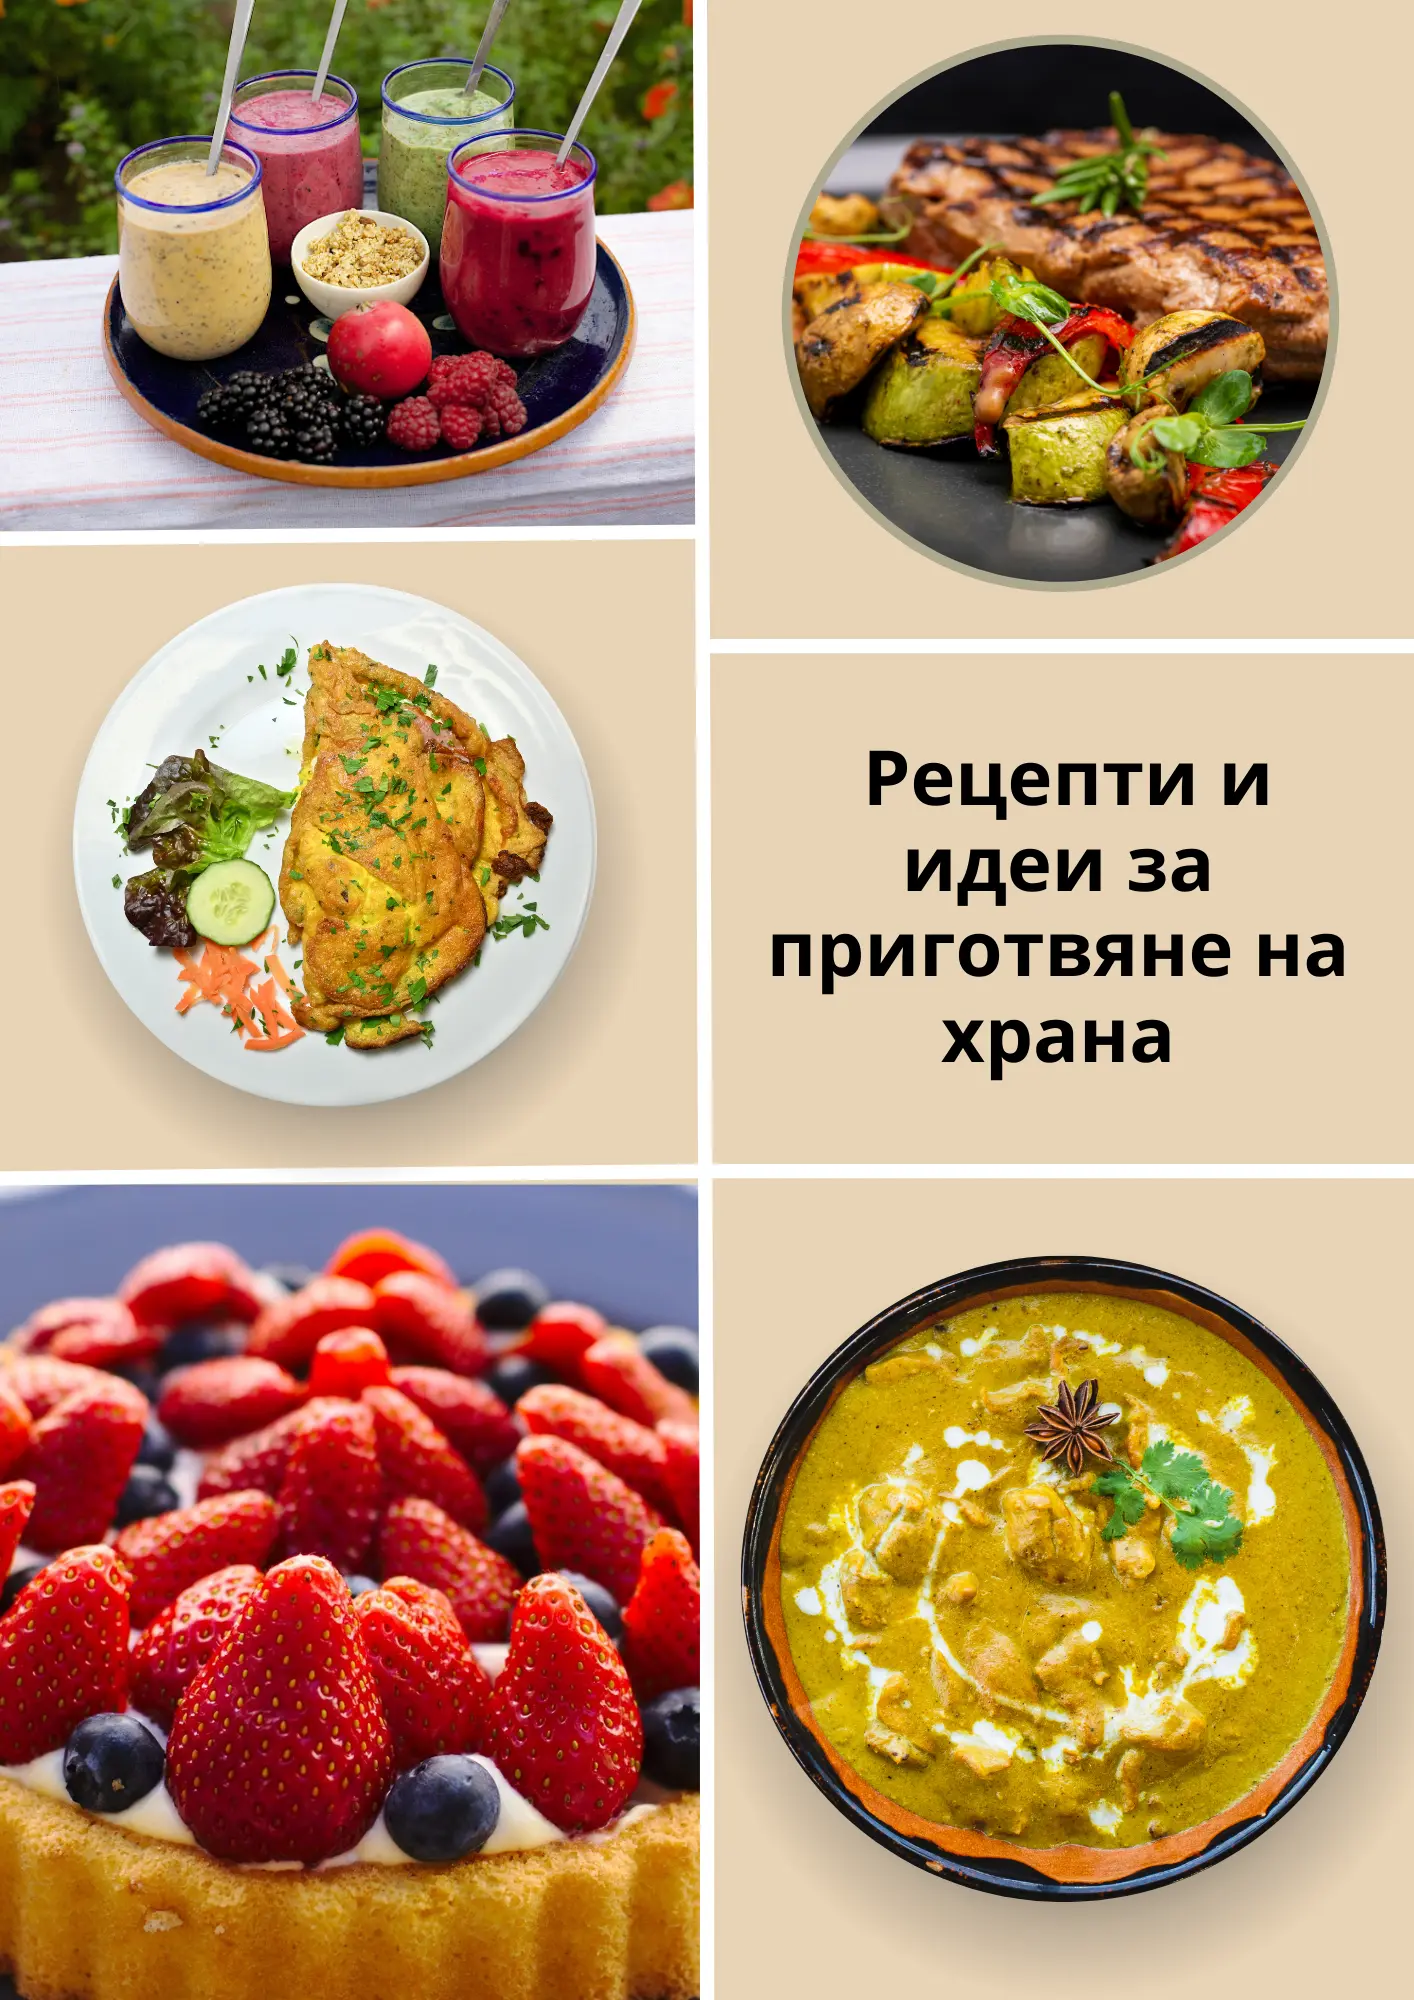 Бонус 1: PDF формат "Рецепти и идеи за приготвяне на храна": получавате раздел със здравословни рецепти и идеи за приготвяне на вкусни, здравослови и полезни ястия и десерти, които могат да бъдат приготвени със свежите плодове и зеленчуци от твоята градин